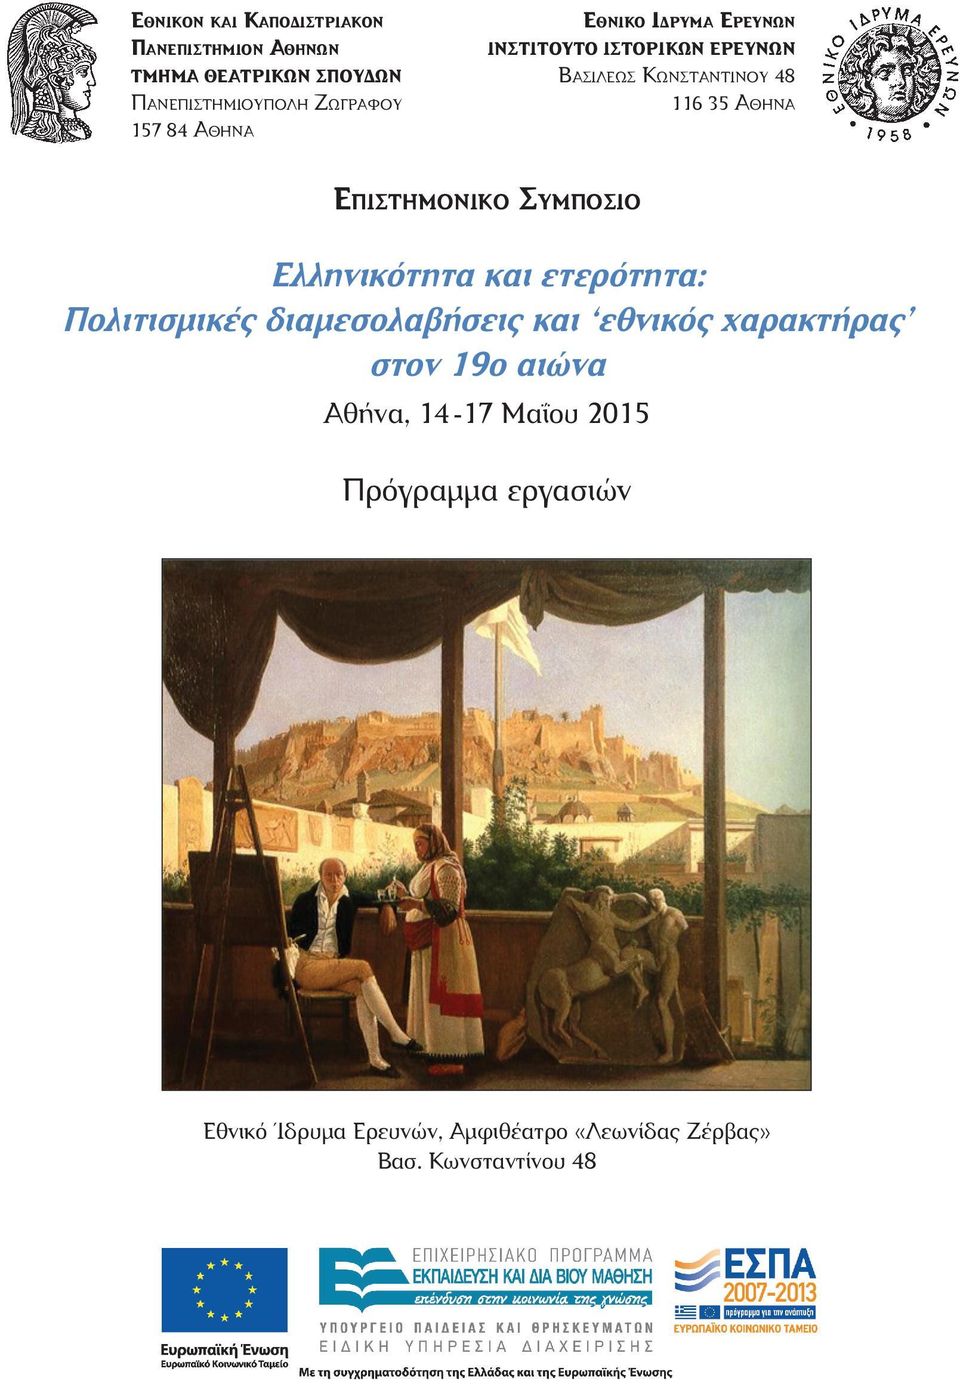 Συμπόσιο Ελληνικότητα και ετερότητα: Πολιτισμικές διαμεσολαβήσεις και εθνικός χαρακτήρας στον 19ο αιώνα